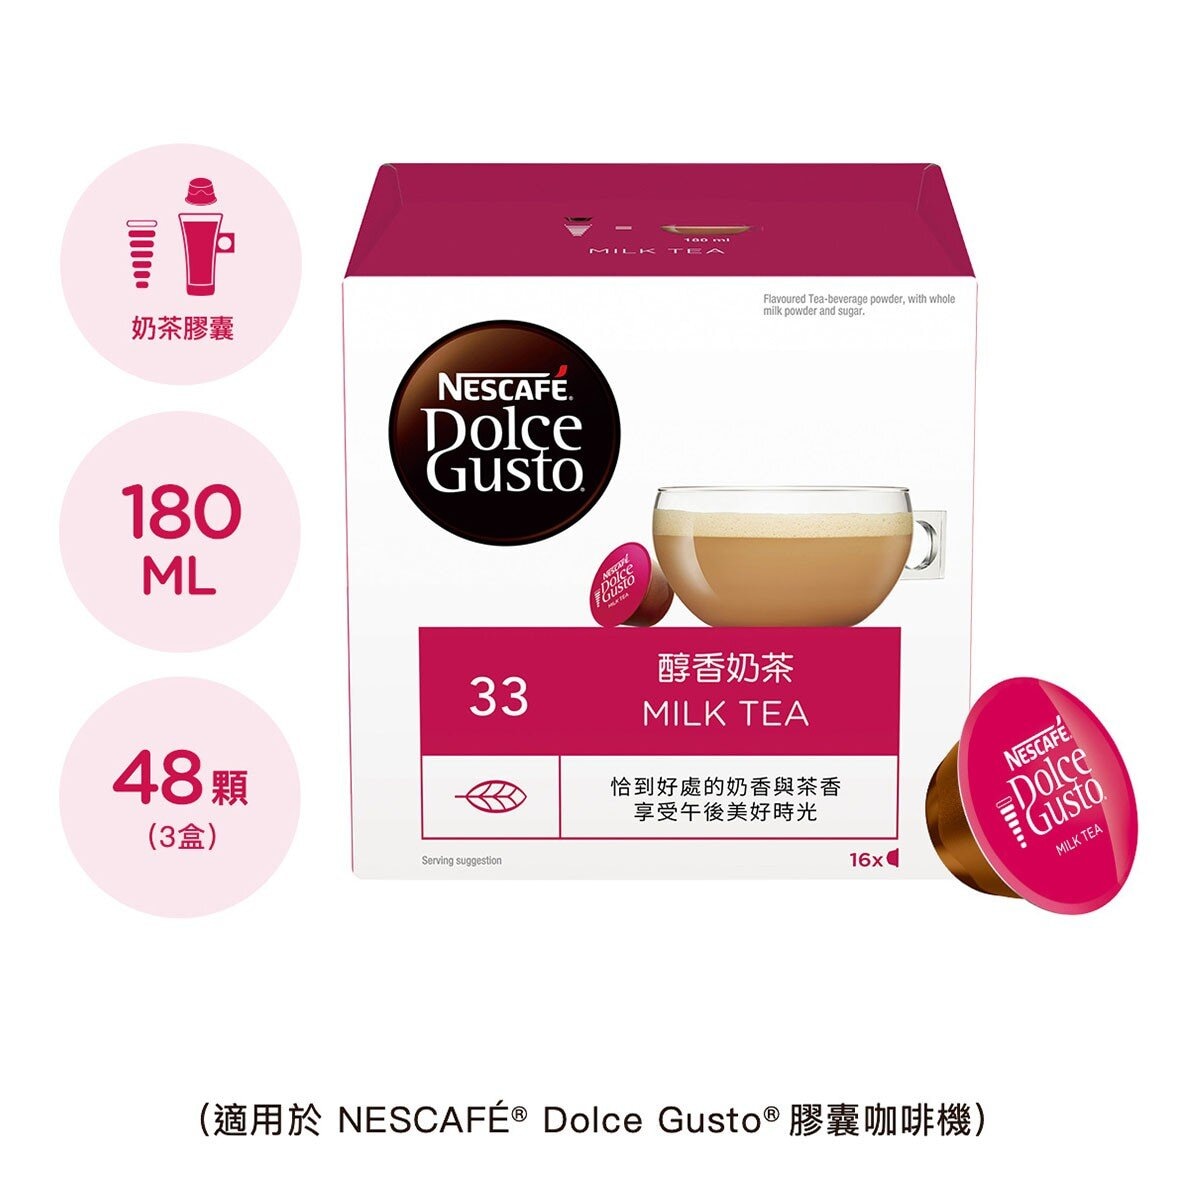 雀巢多趣酷思 醇香奶茶 + 焦糖瑪奇朵咖啡膠囊組 96顆 適用NESCAFE Dolce Gusto機器